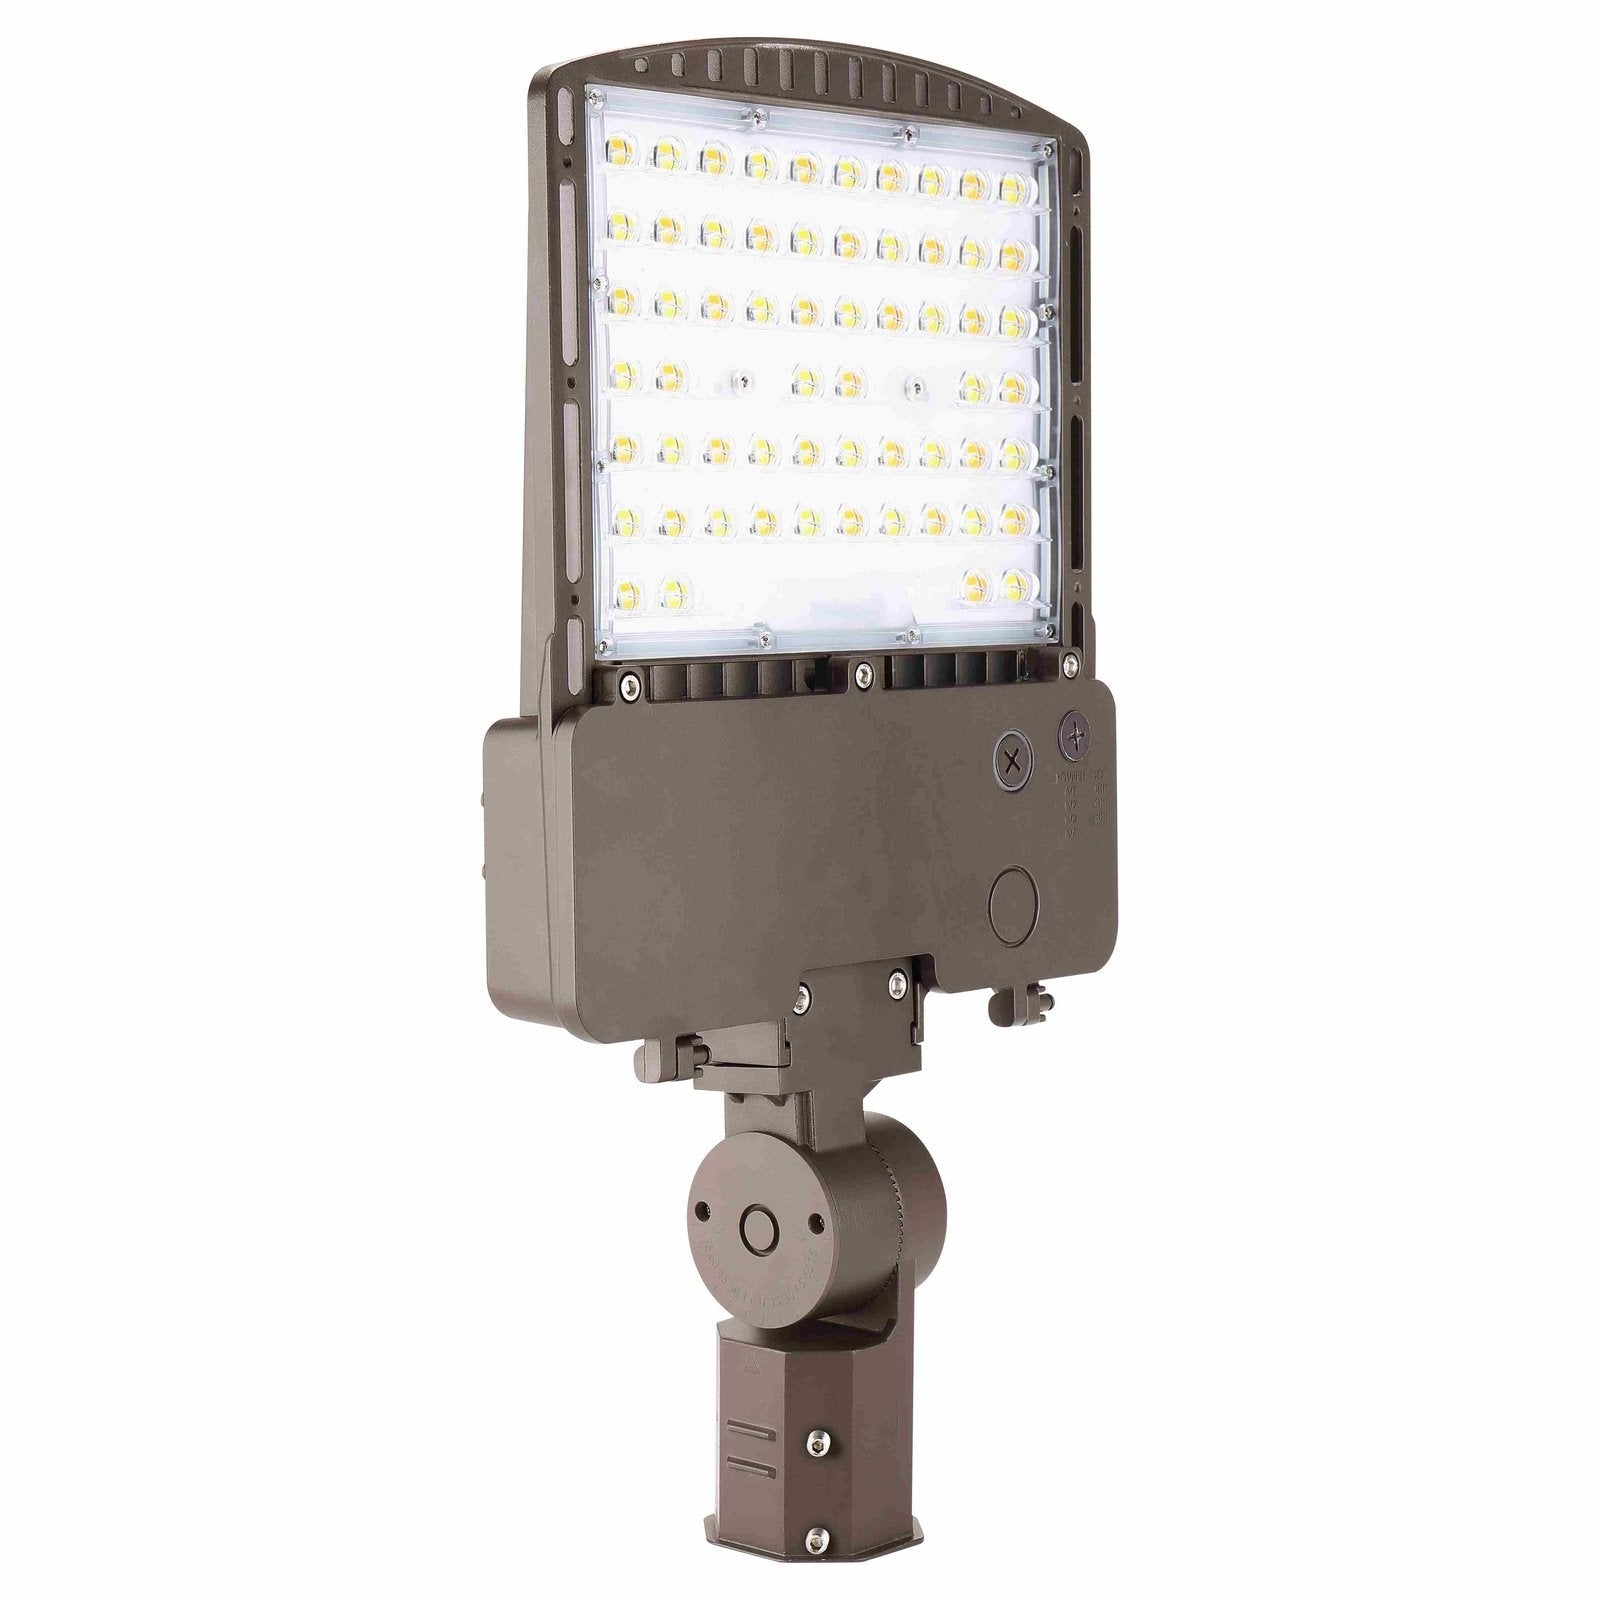 MAL08 LED Area Flood Light 140W, 120-277V, Type 3, 5000K/4000K/3000K CCT and Power Adjustable - Dark Bronze